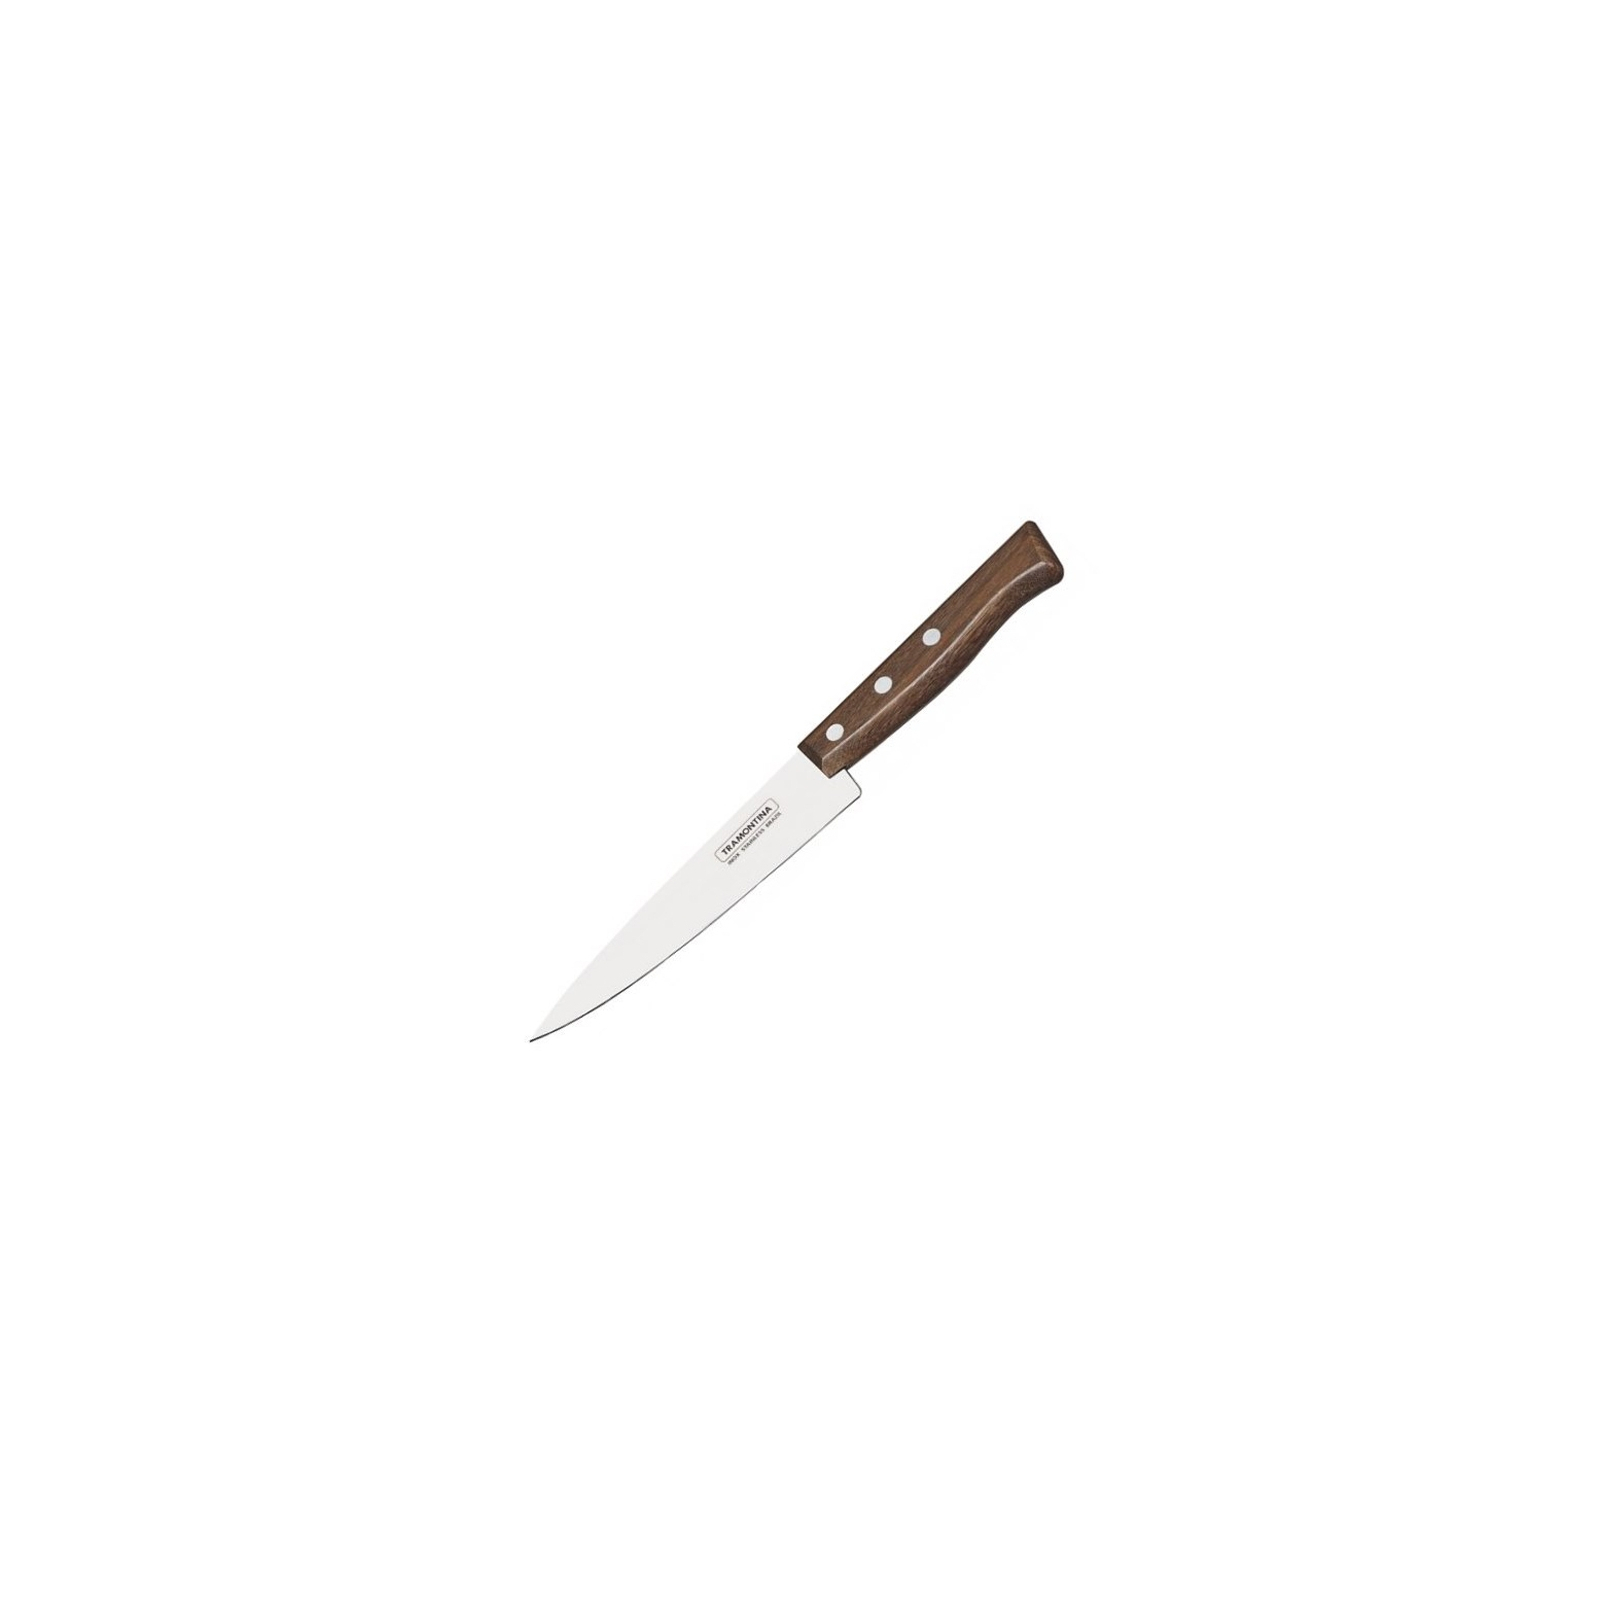 Кухонный нож Tramontina Tradicional поварской 152 мм (22219/106)